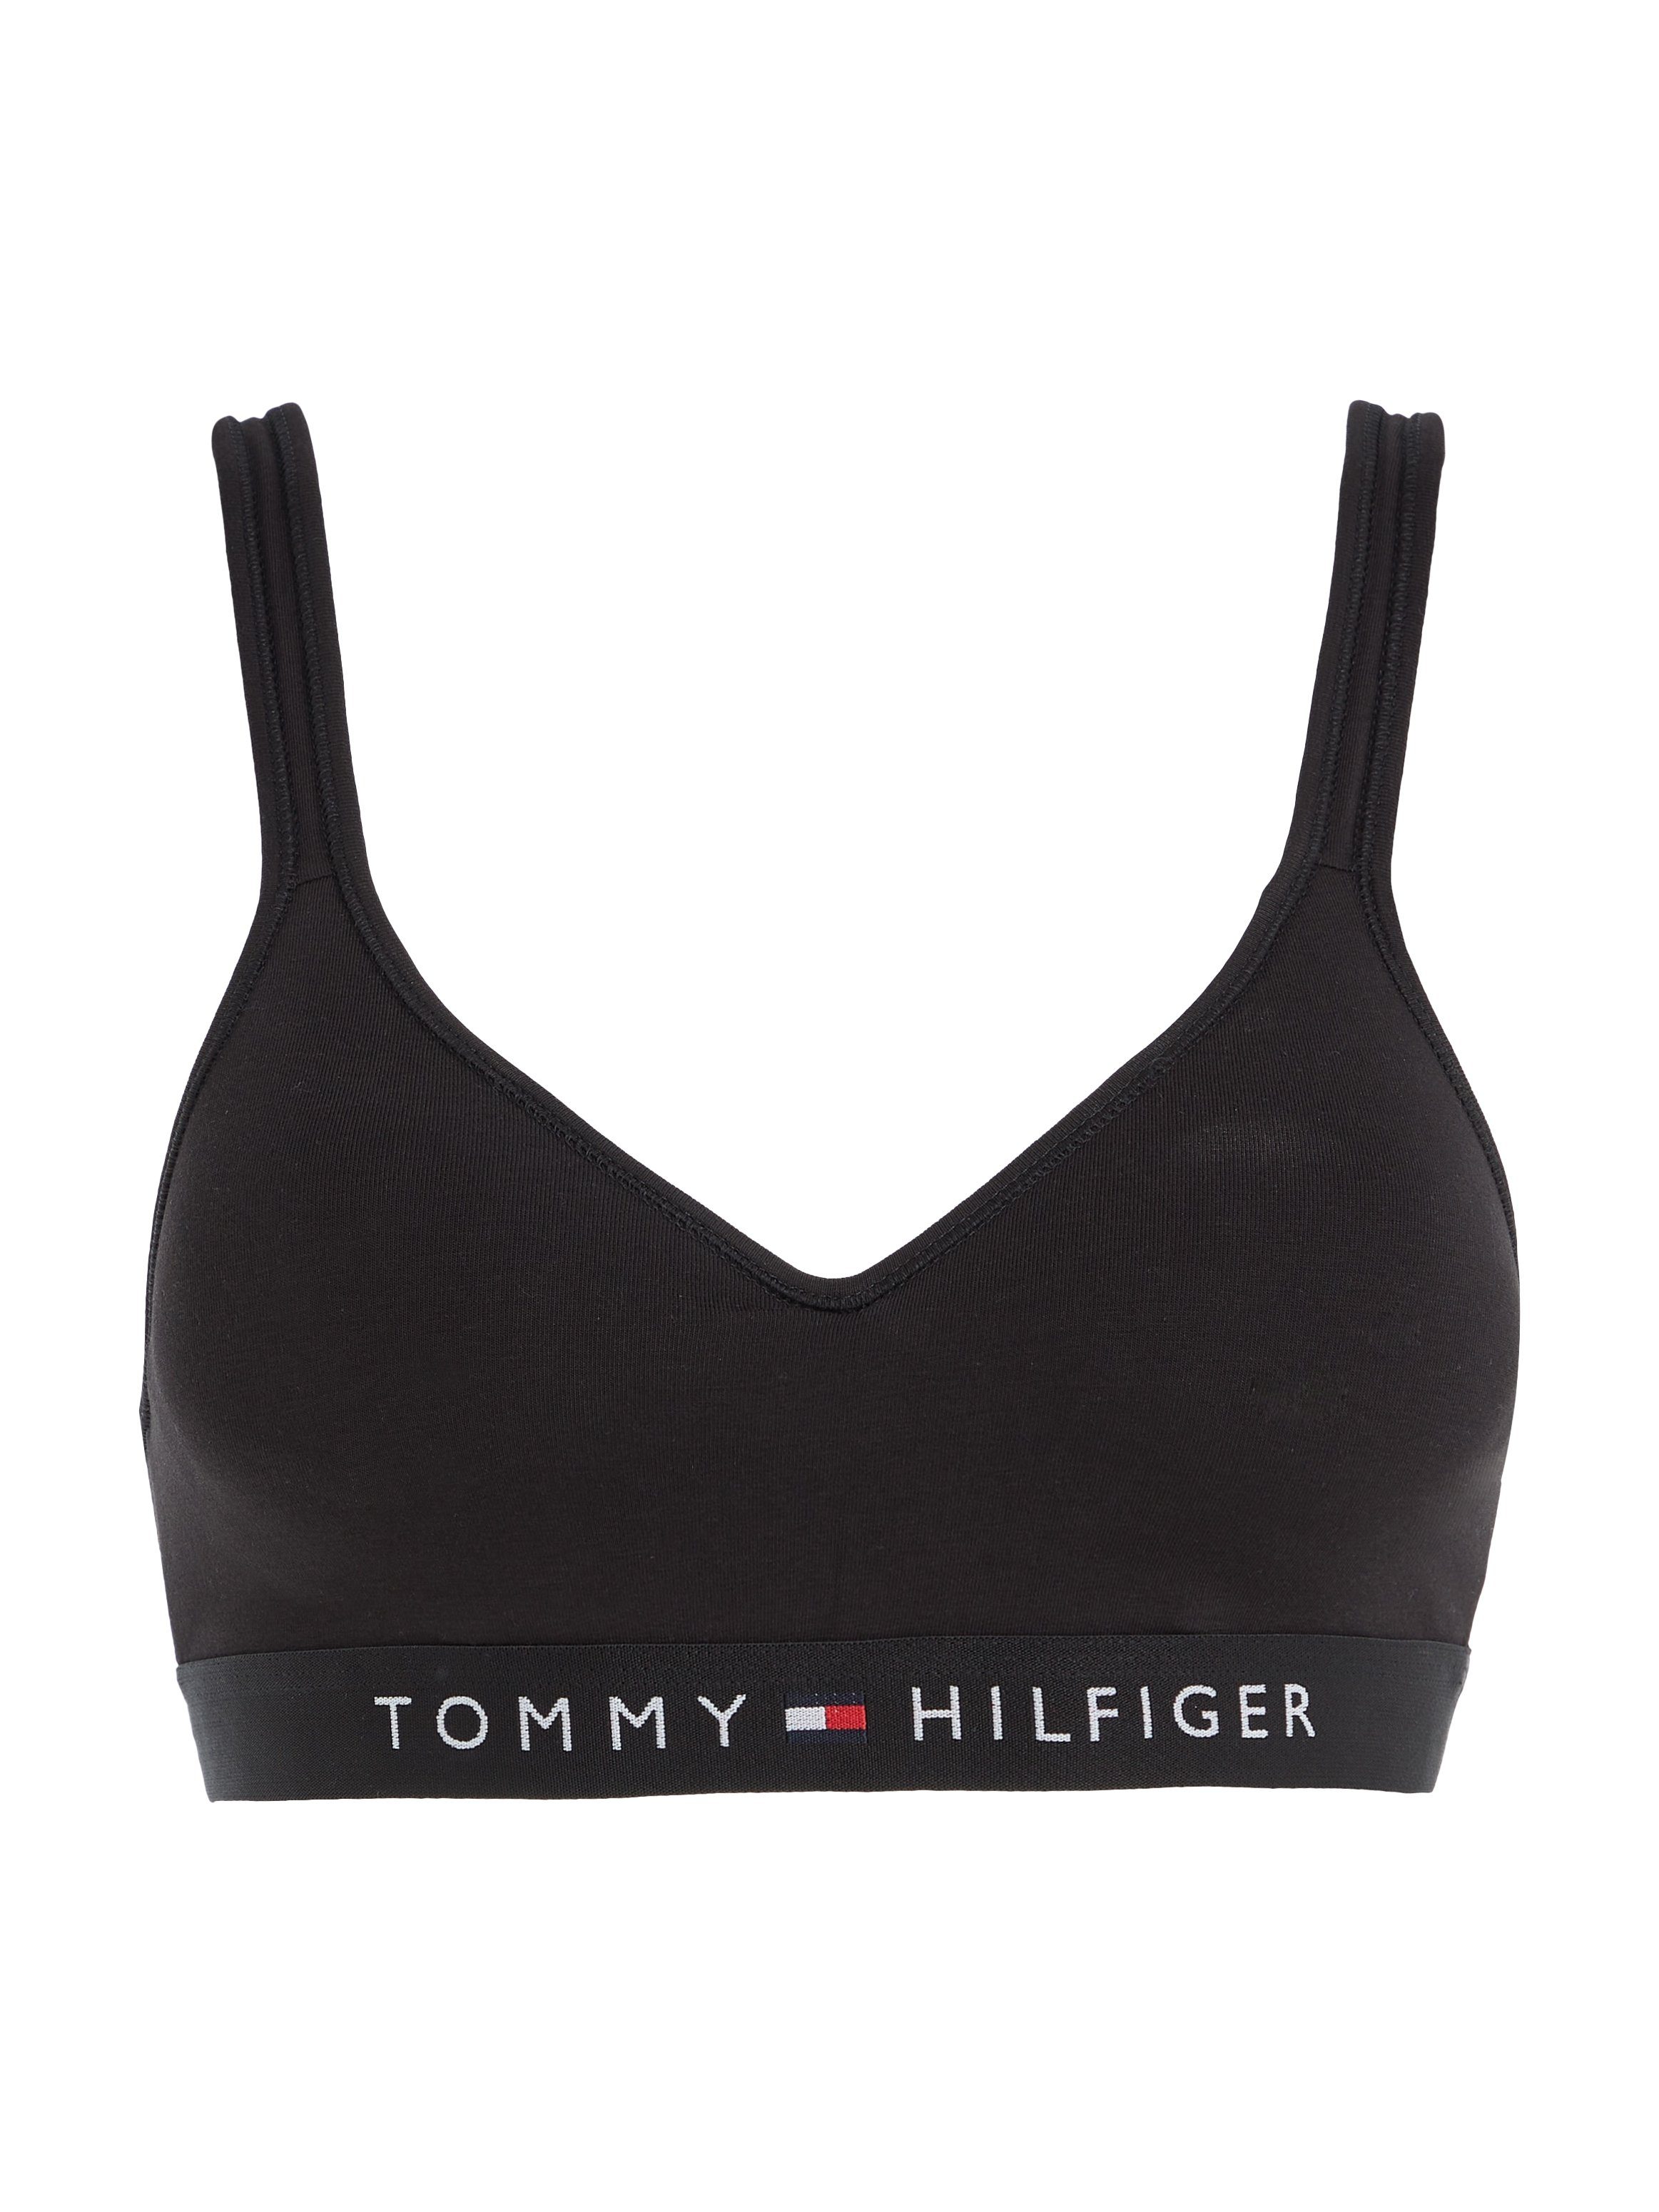 Underwear BRALETTE Markenlabel Tommy Hilfiger LIFT Hilfiger mit Tommy Black Bralette-BH